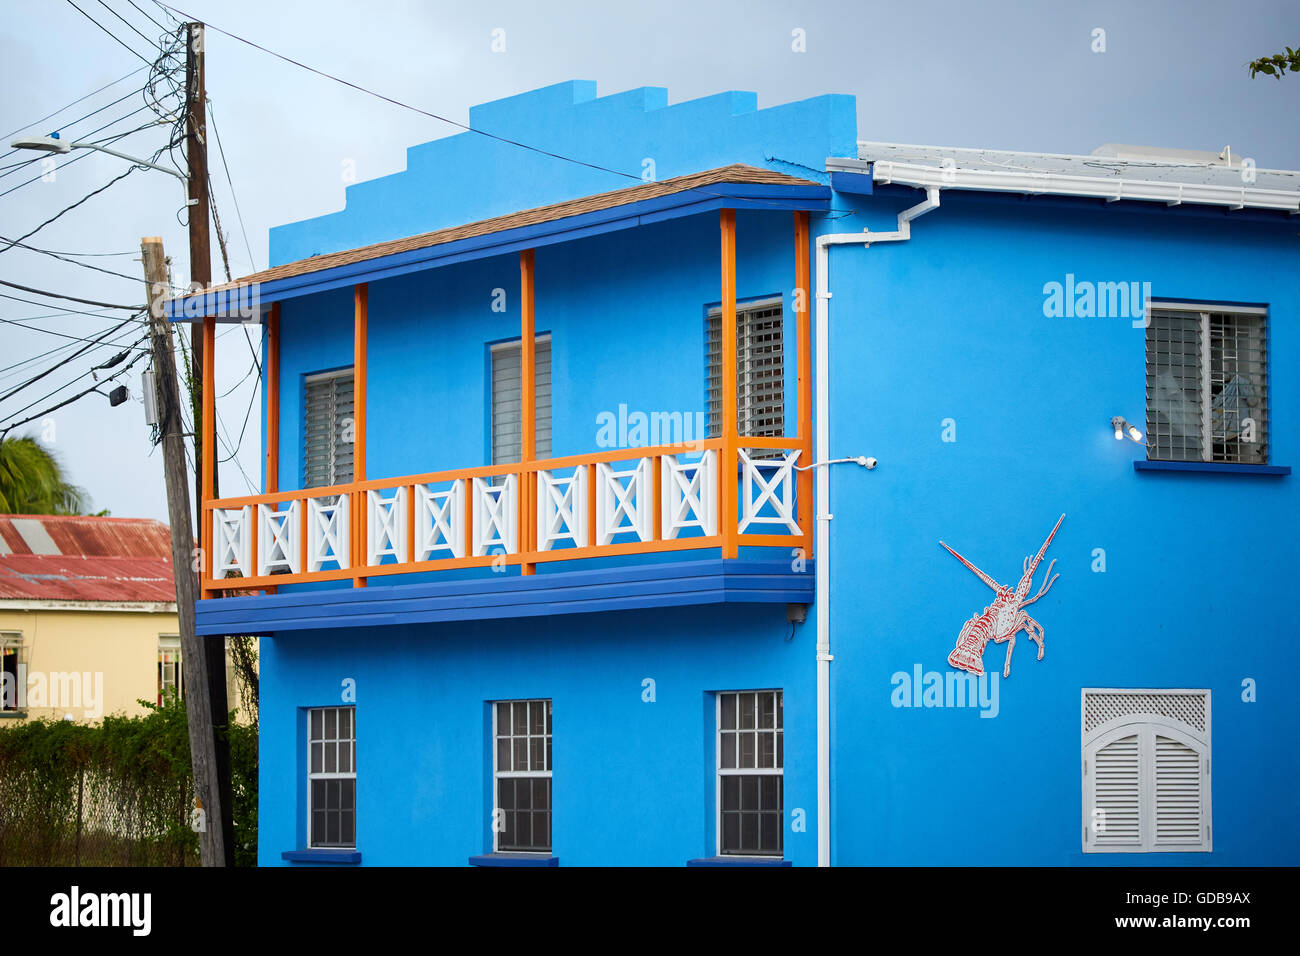 Die kleinen Antillen Barbados Pfarrkirche Sankt Michael Westindien Hauptstadt Bridgetown Bars Kneipen leuchtenden Farben blue River Road painte Stockfoto